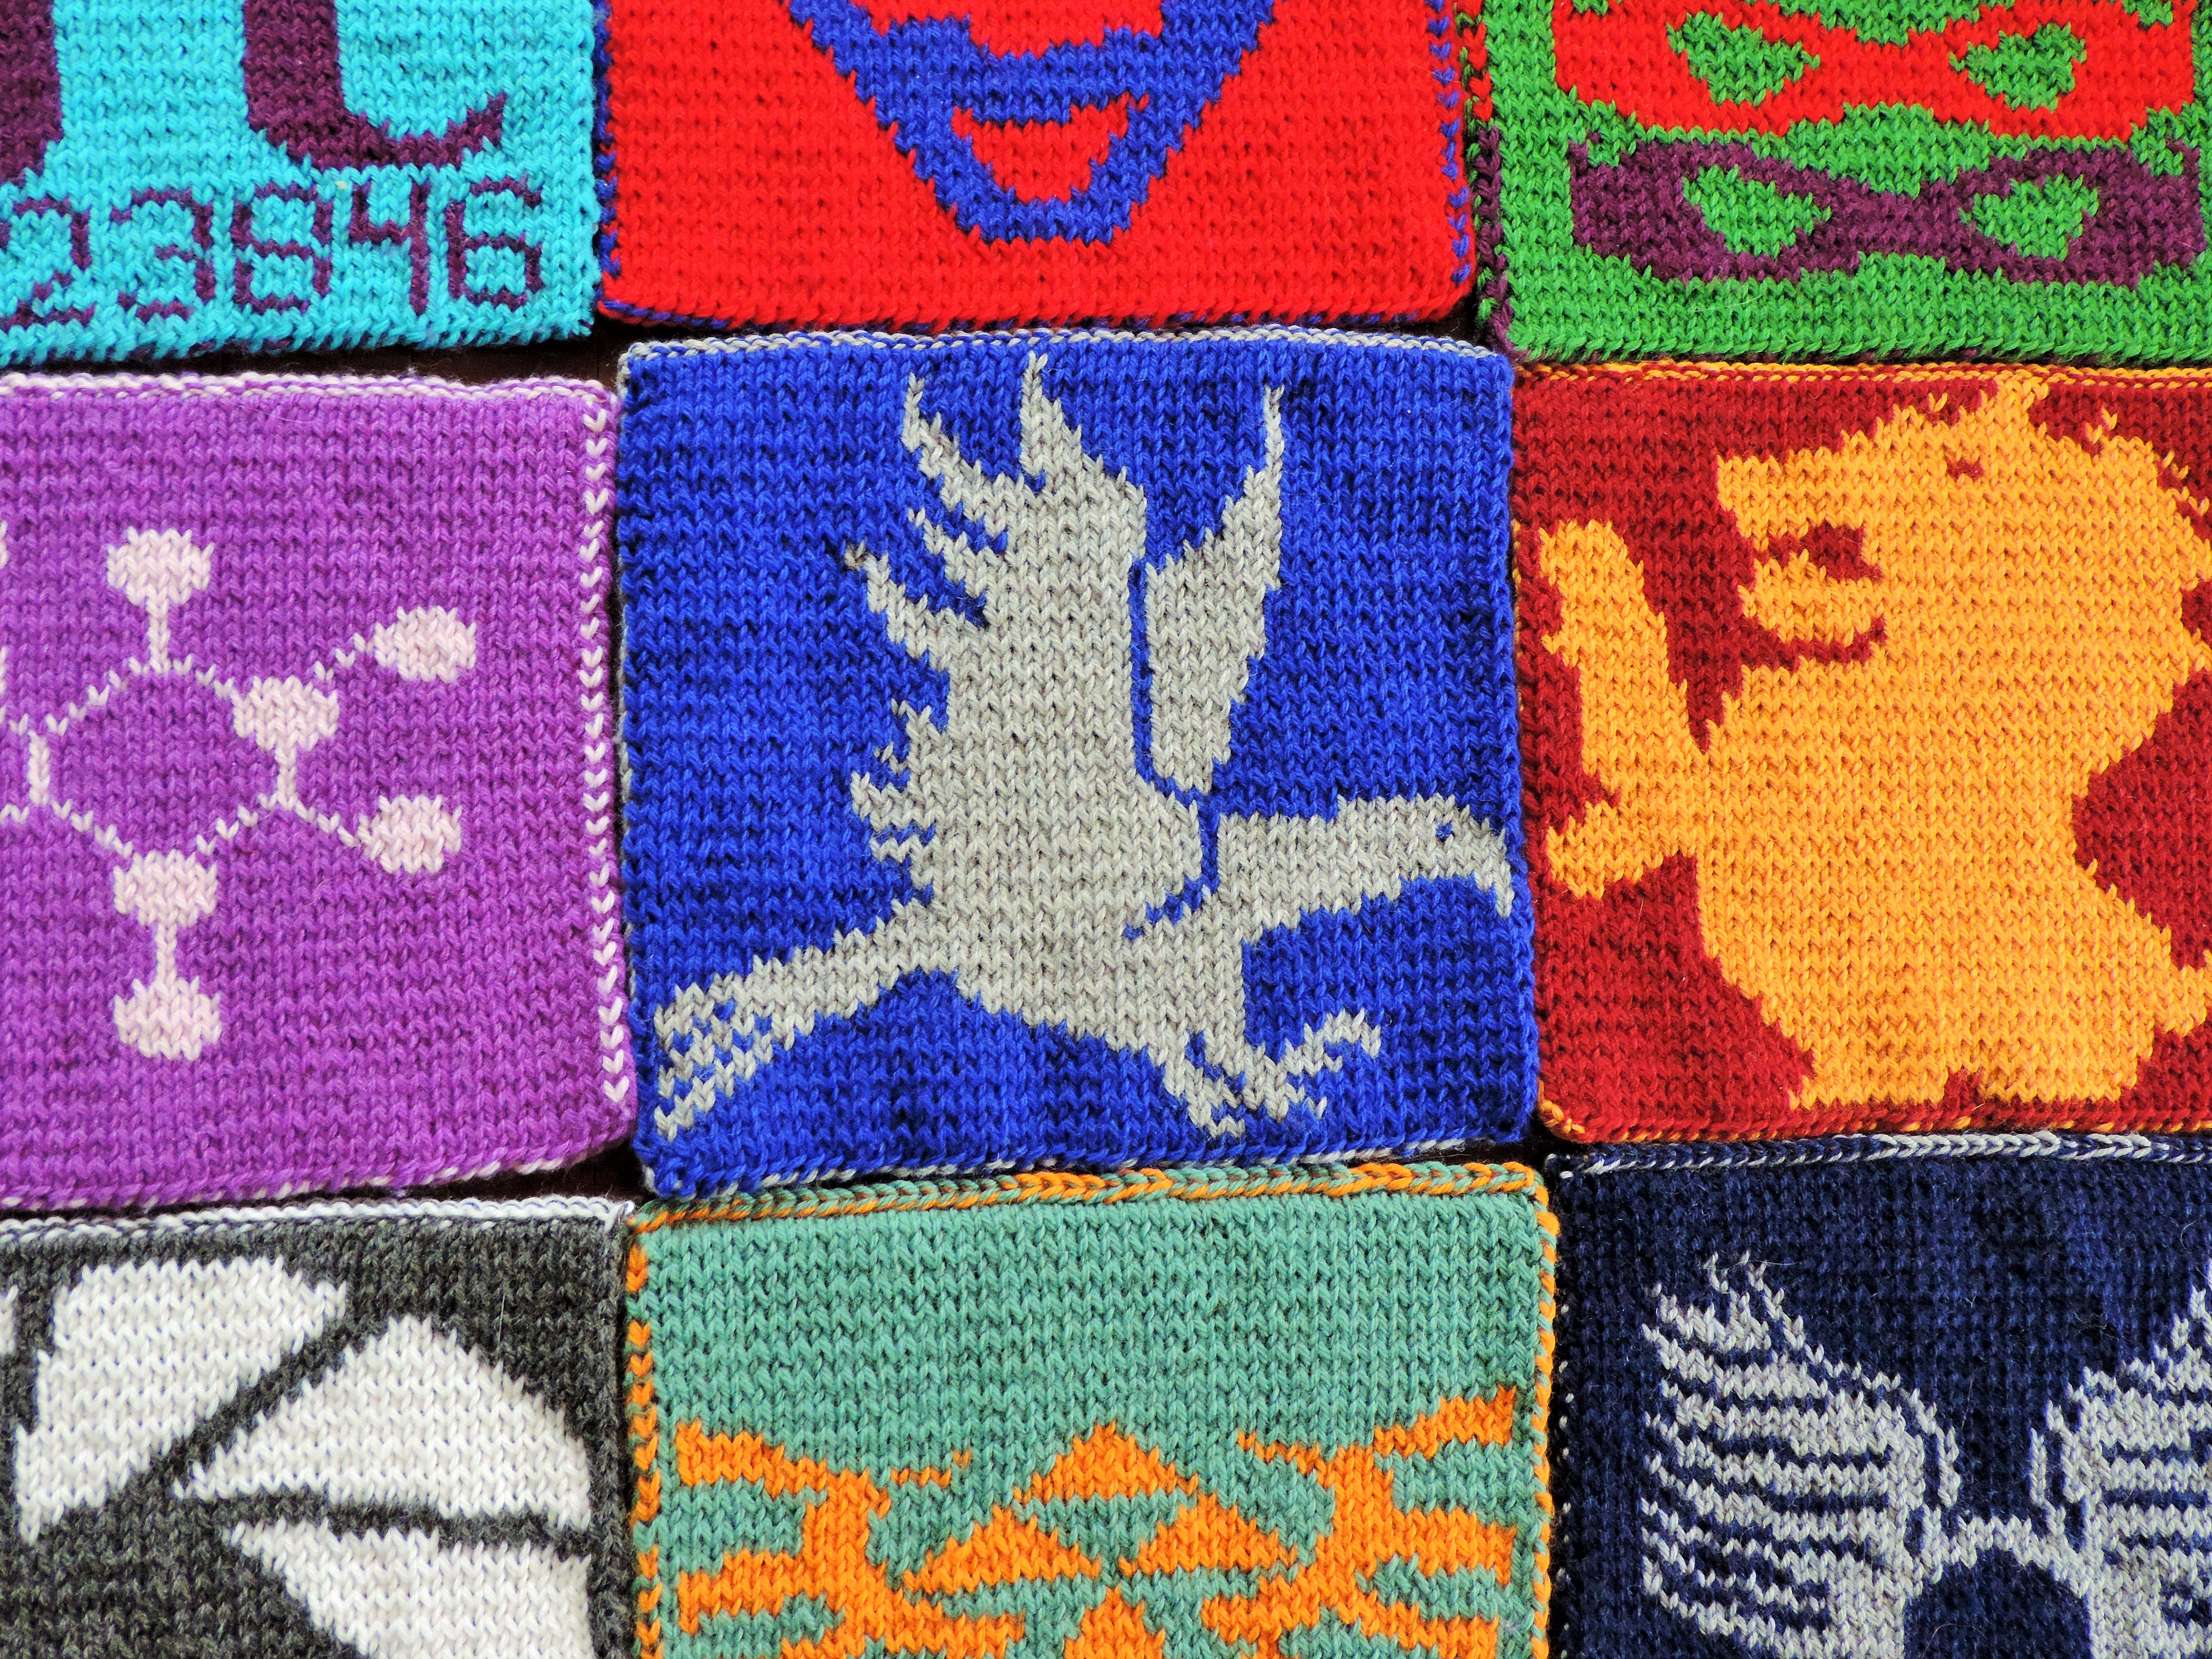 Harry Potter. 16 Free Small Cross Stitch Patterns PDF  Harry potter cross  stitch pattern, Cross stitch charts, Small cross stitch